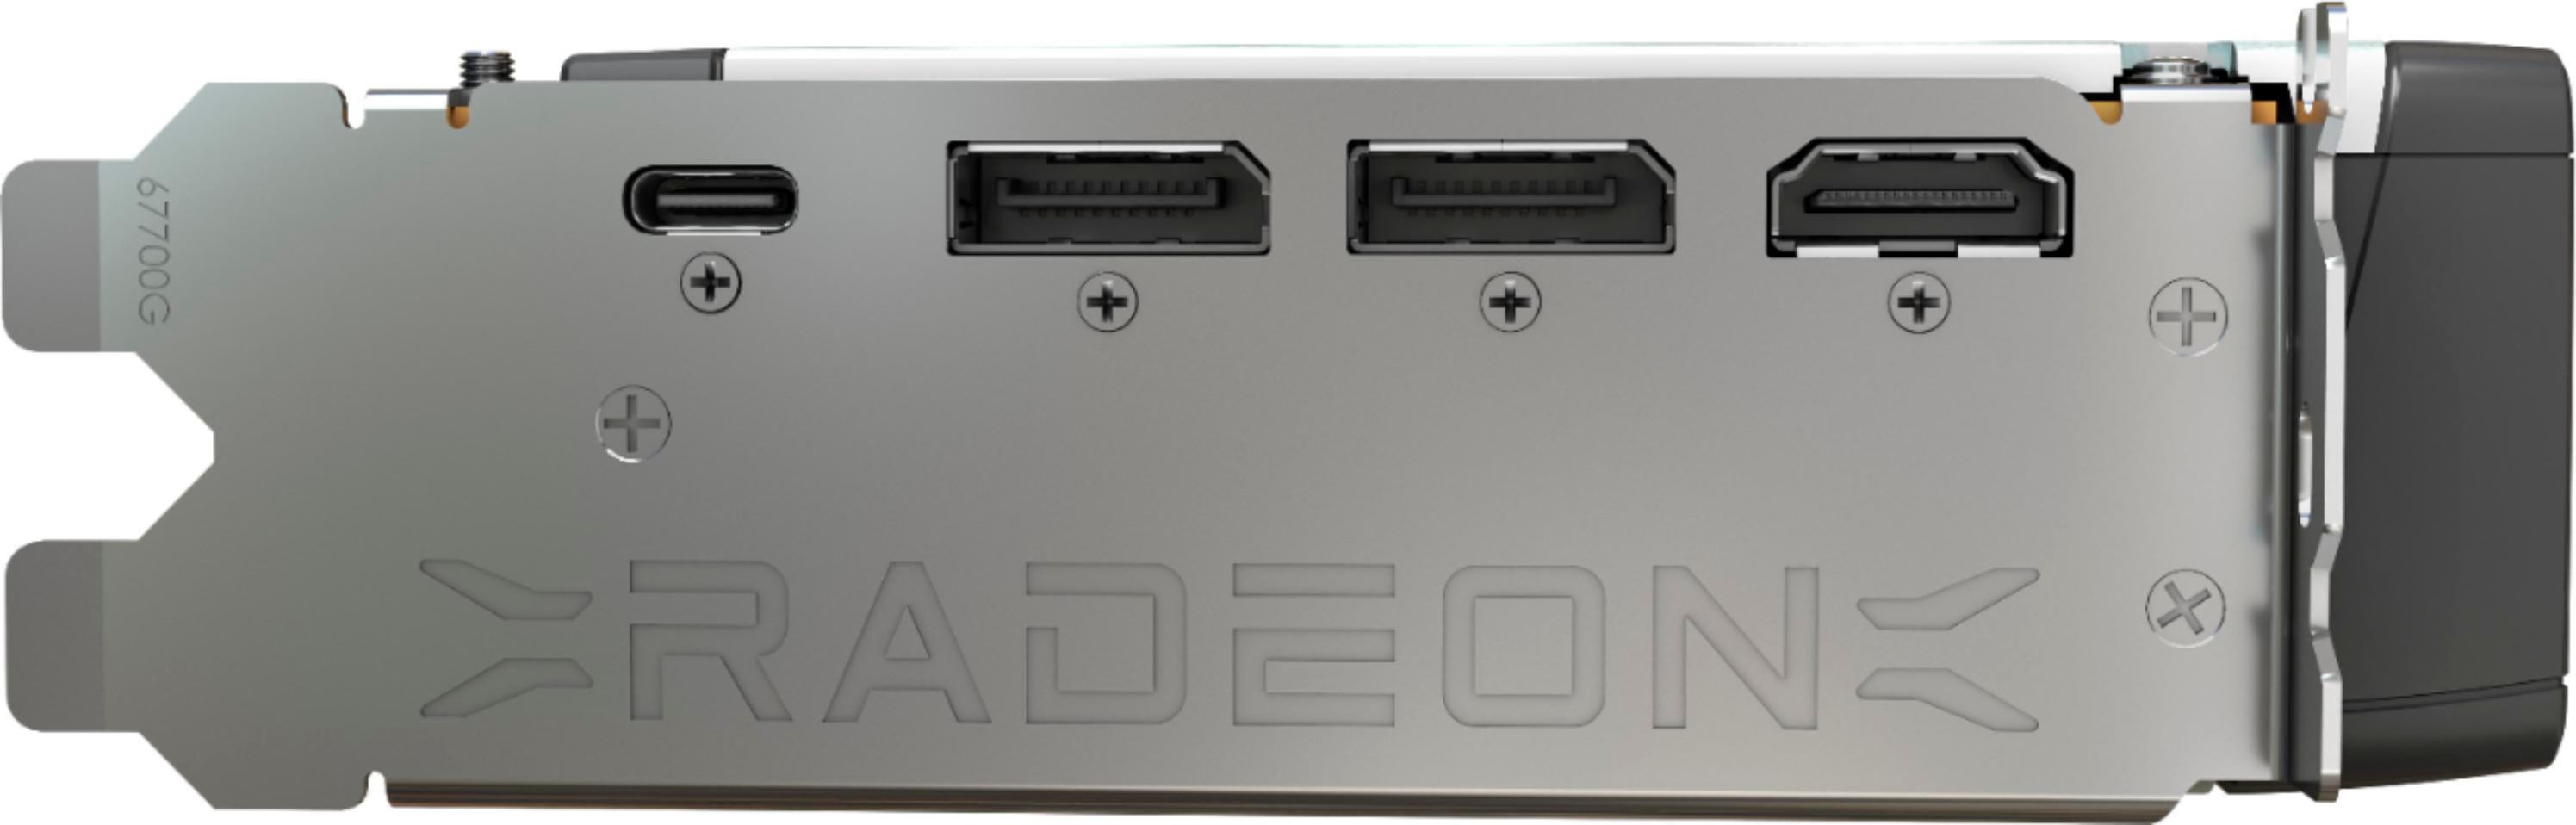 Best Buy: MSI AMD Radeon RX 6800 XT 16G 16GB GDDR6 PCI Express 4.0 Graphics  Card Black Radeon RX 6800 XT 16G